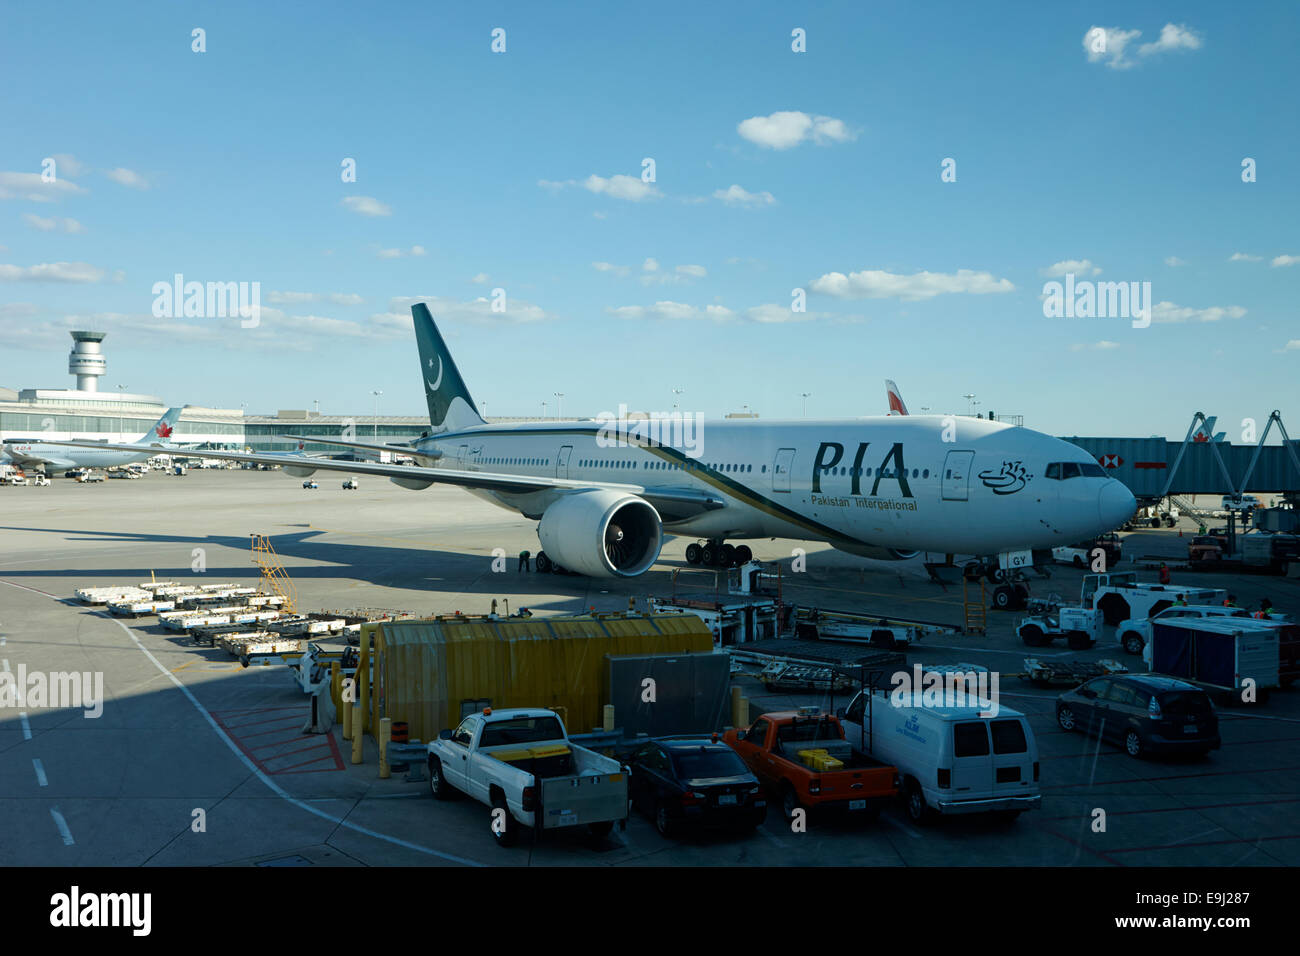 Pakistan International Airlines au terminal 3 de l'aéroport international Pearson de Toronto Canada Banque D'Images